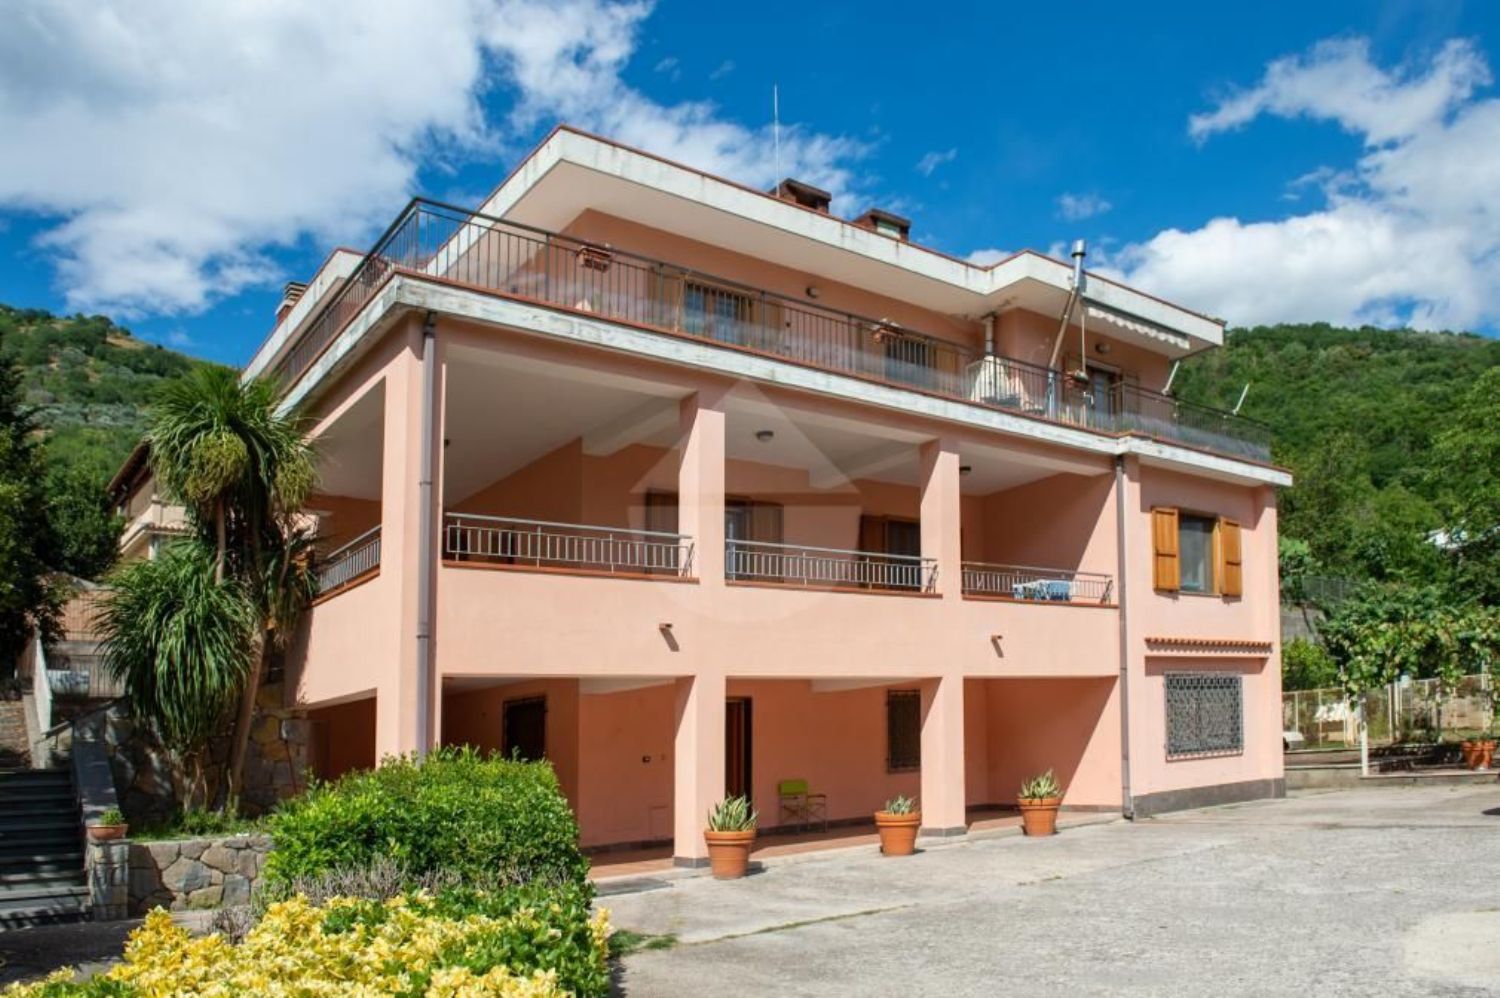 Villa Bifamiliare in Vendita a Mercato San Severino